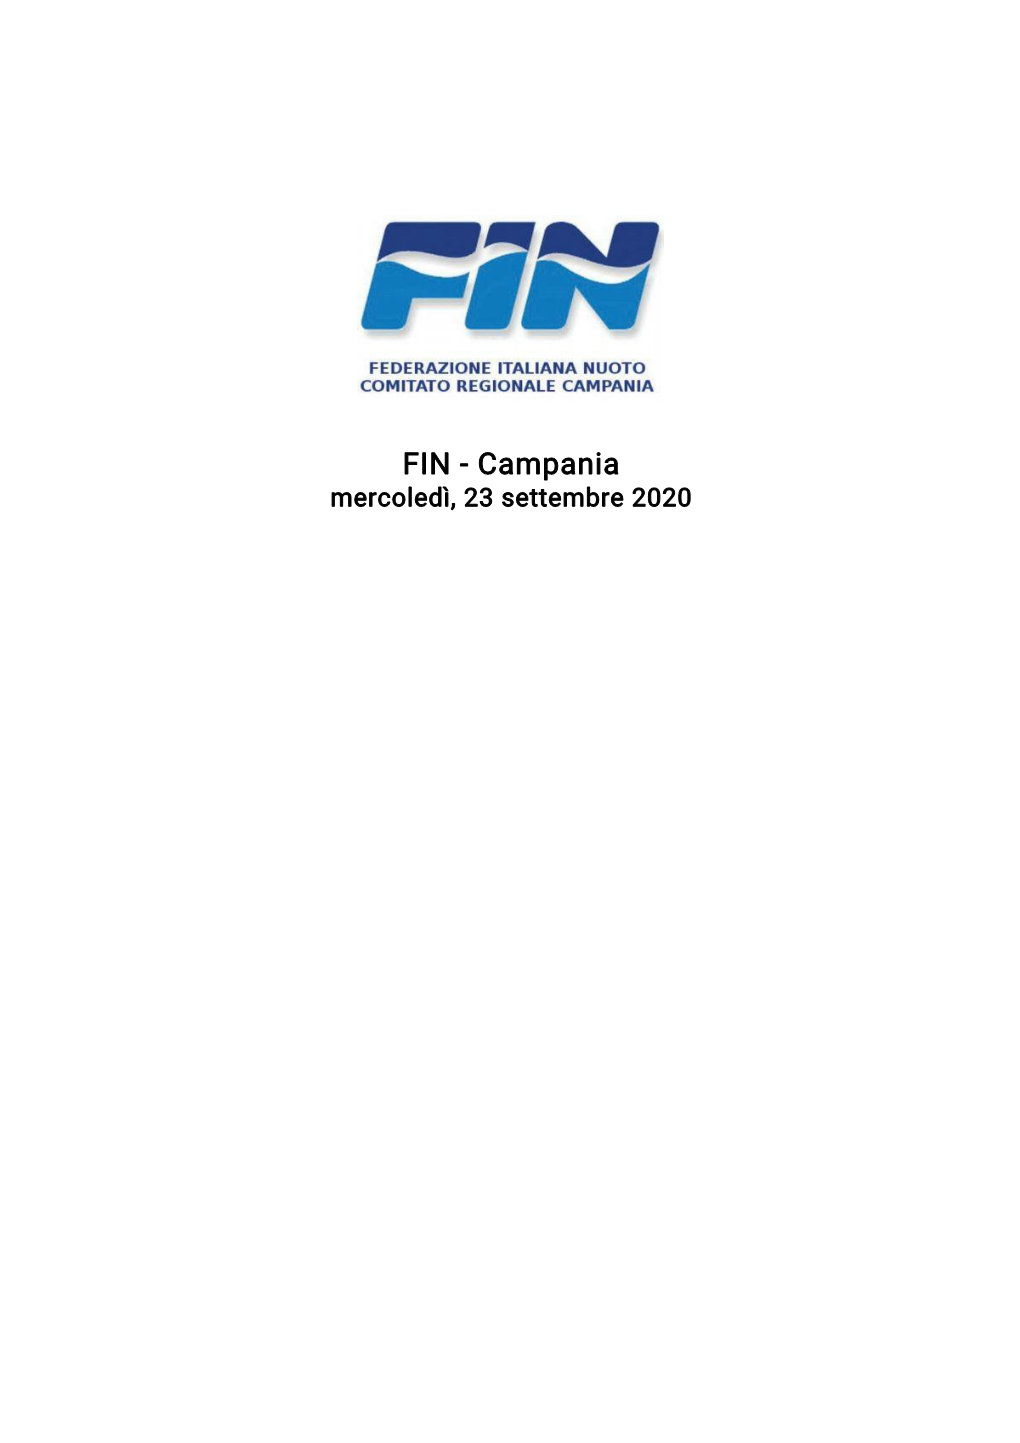 FIN - Campania Mercoledì, 23 Settembre 2020 FIN - Campania Mercoledì, 23 Settembre 2020